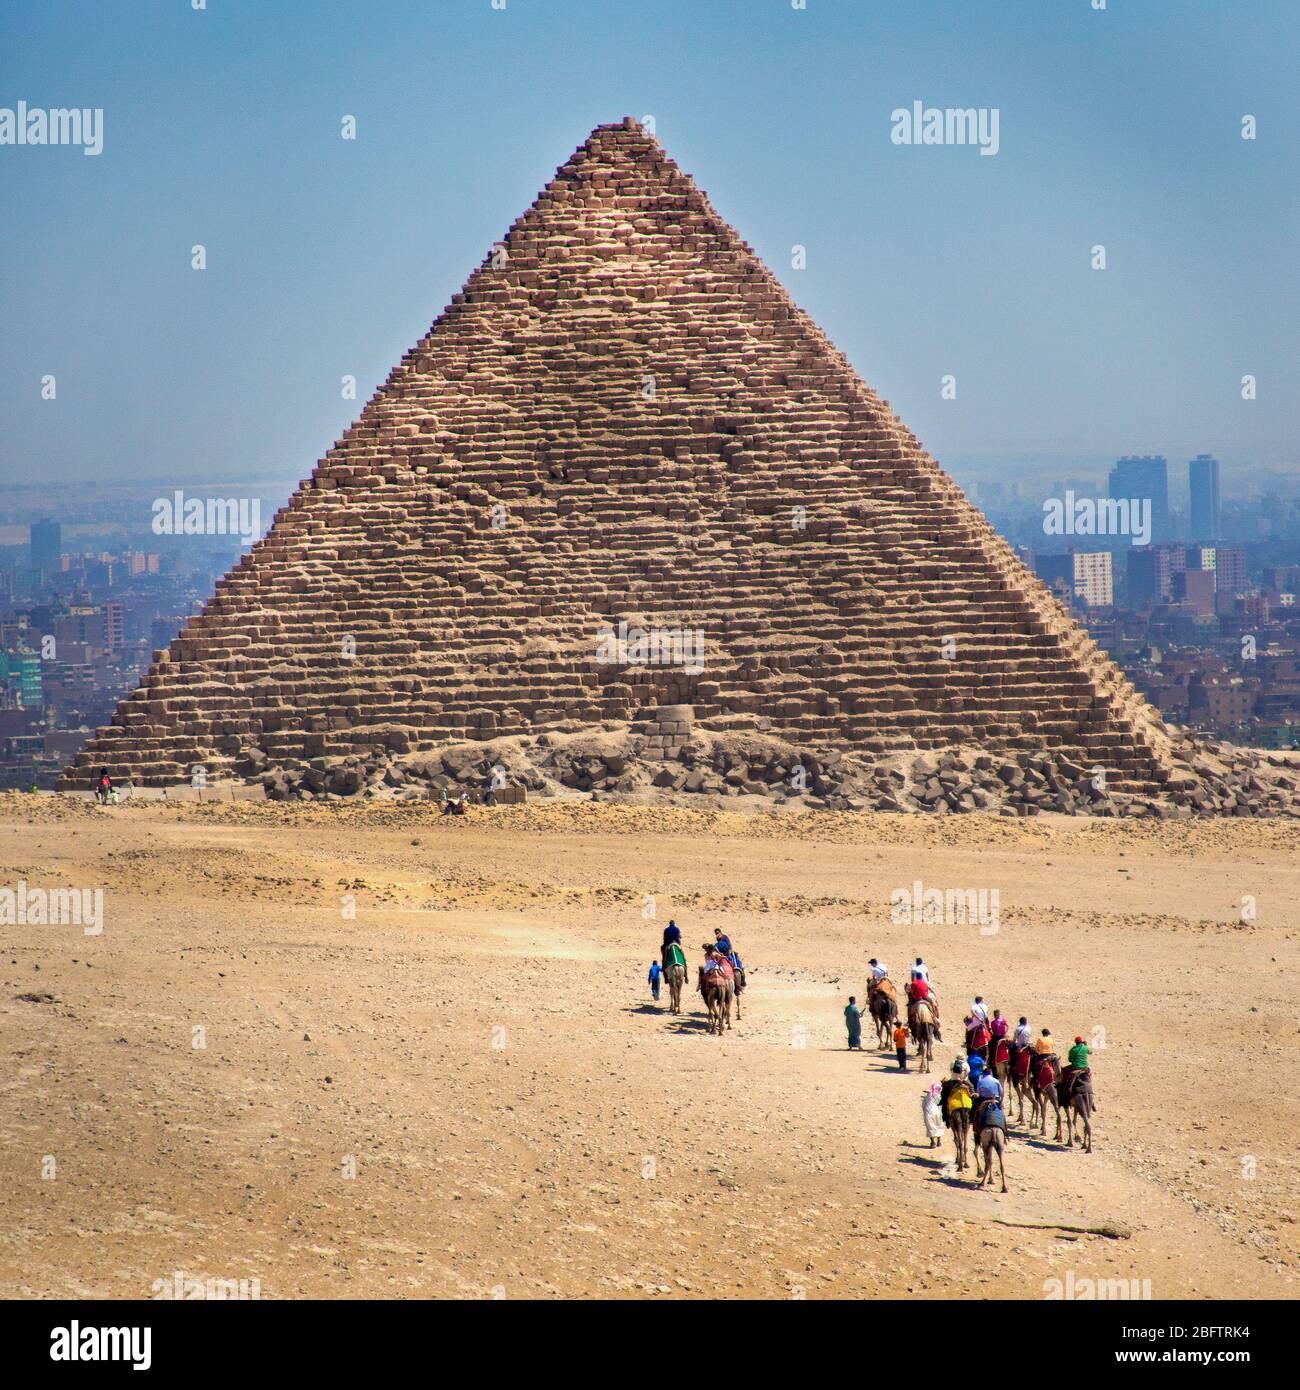 Les touristes qui campaient dans une pyramide à Giza, en Egypte Banque D'Images